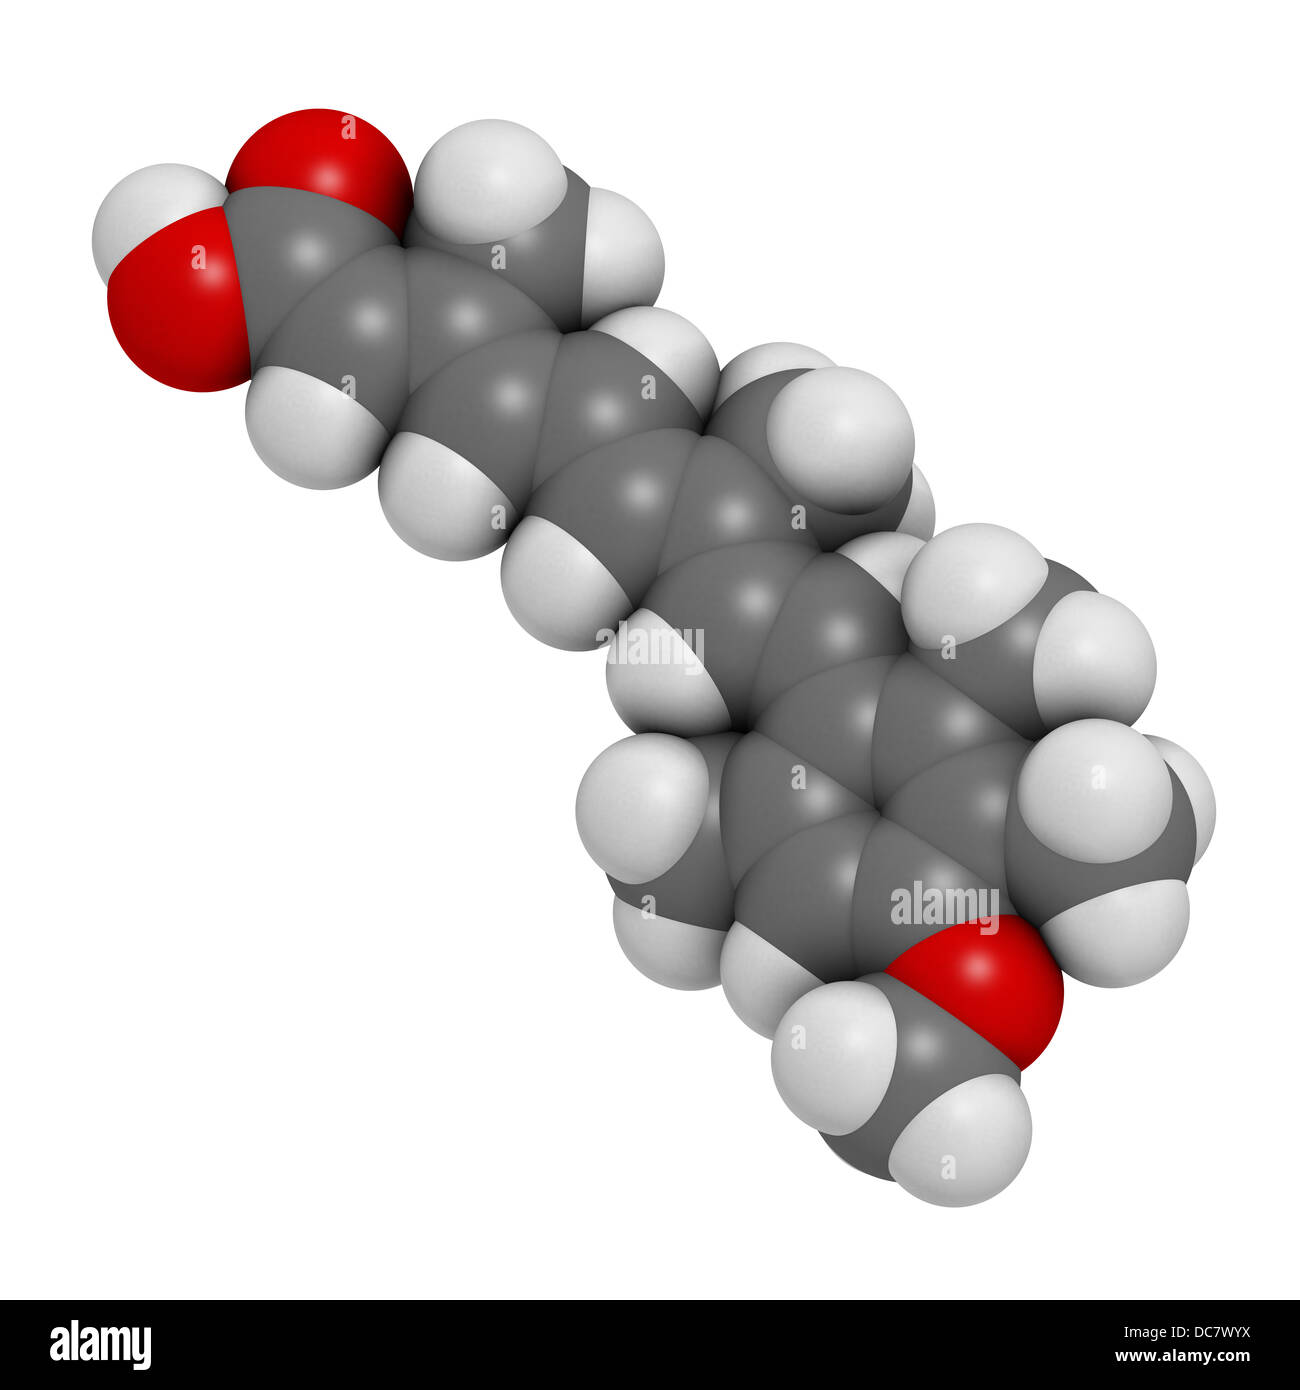 Acitretin Psoriasis Droge, chemische Struktur. Atome werden als Kugeln mit konventionellen Farbkodierung dargestellt. Stockfoto